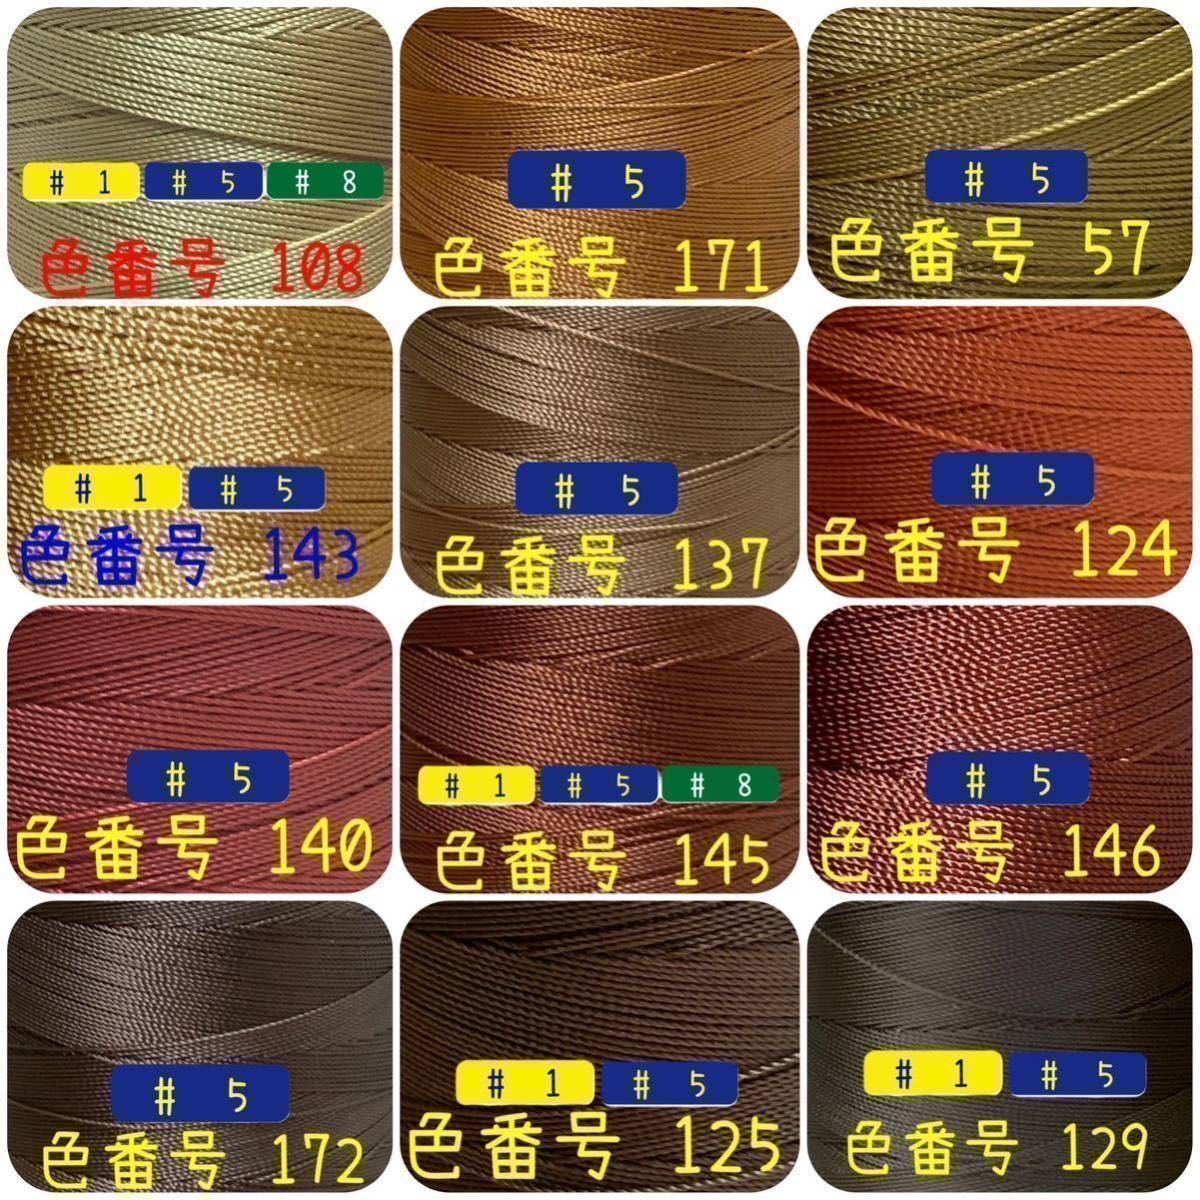 【3点普通郵便】ビニモMBT #1 #5 #8 レザークラフト手縫い糸_画像3